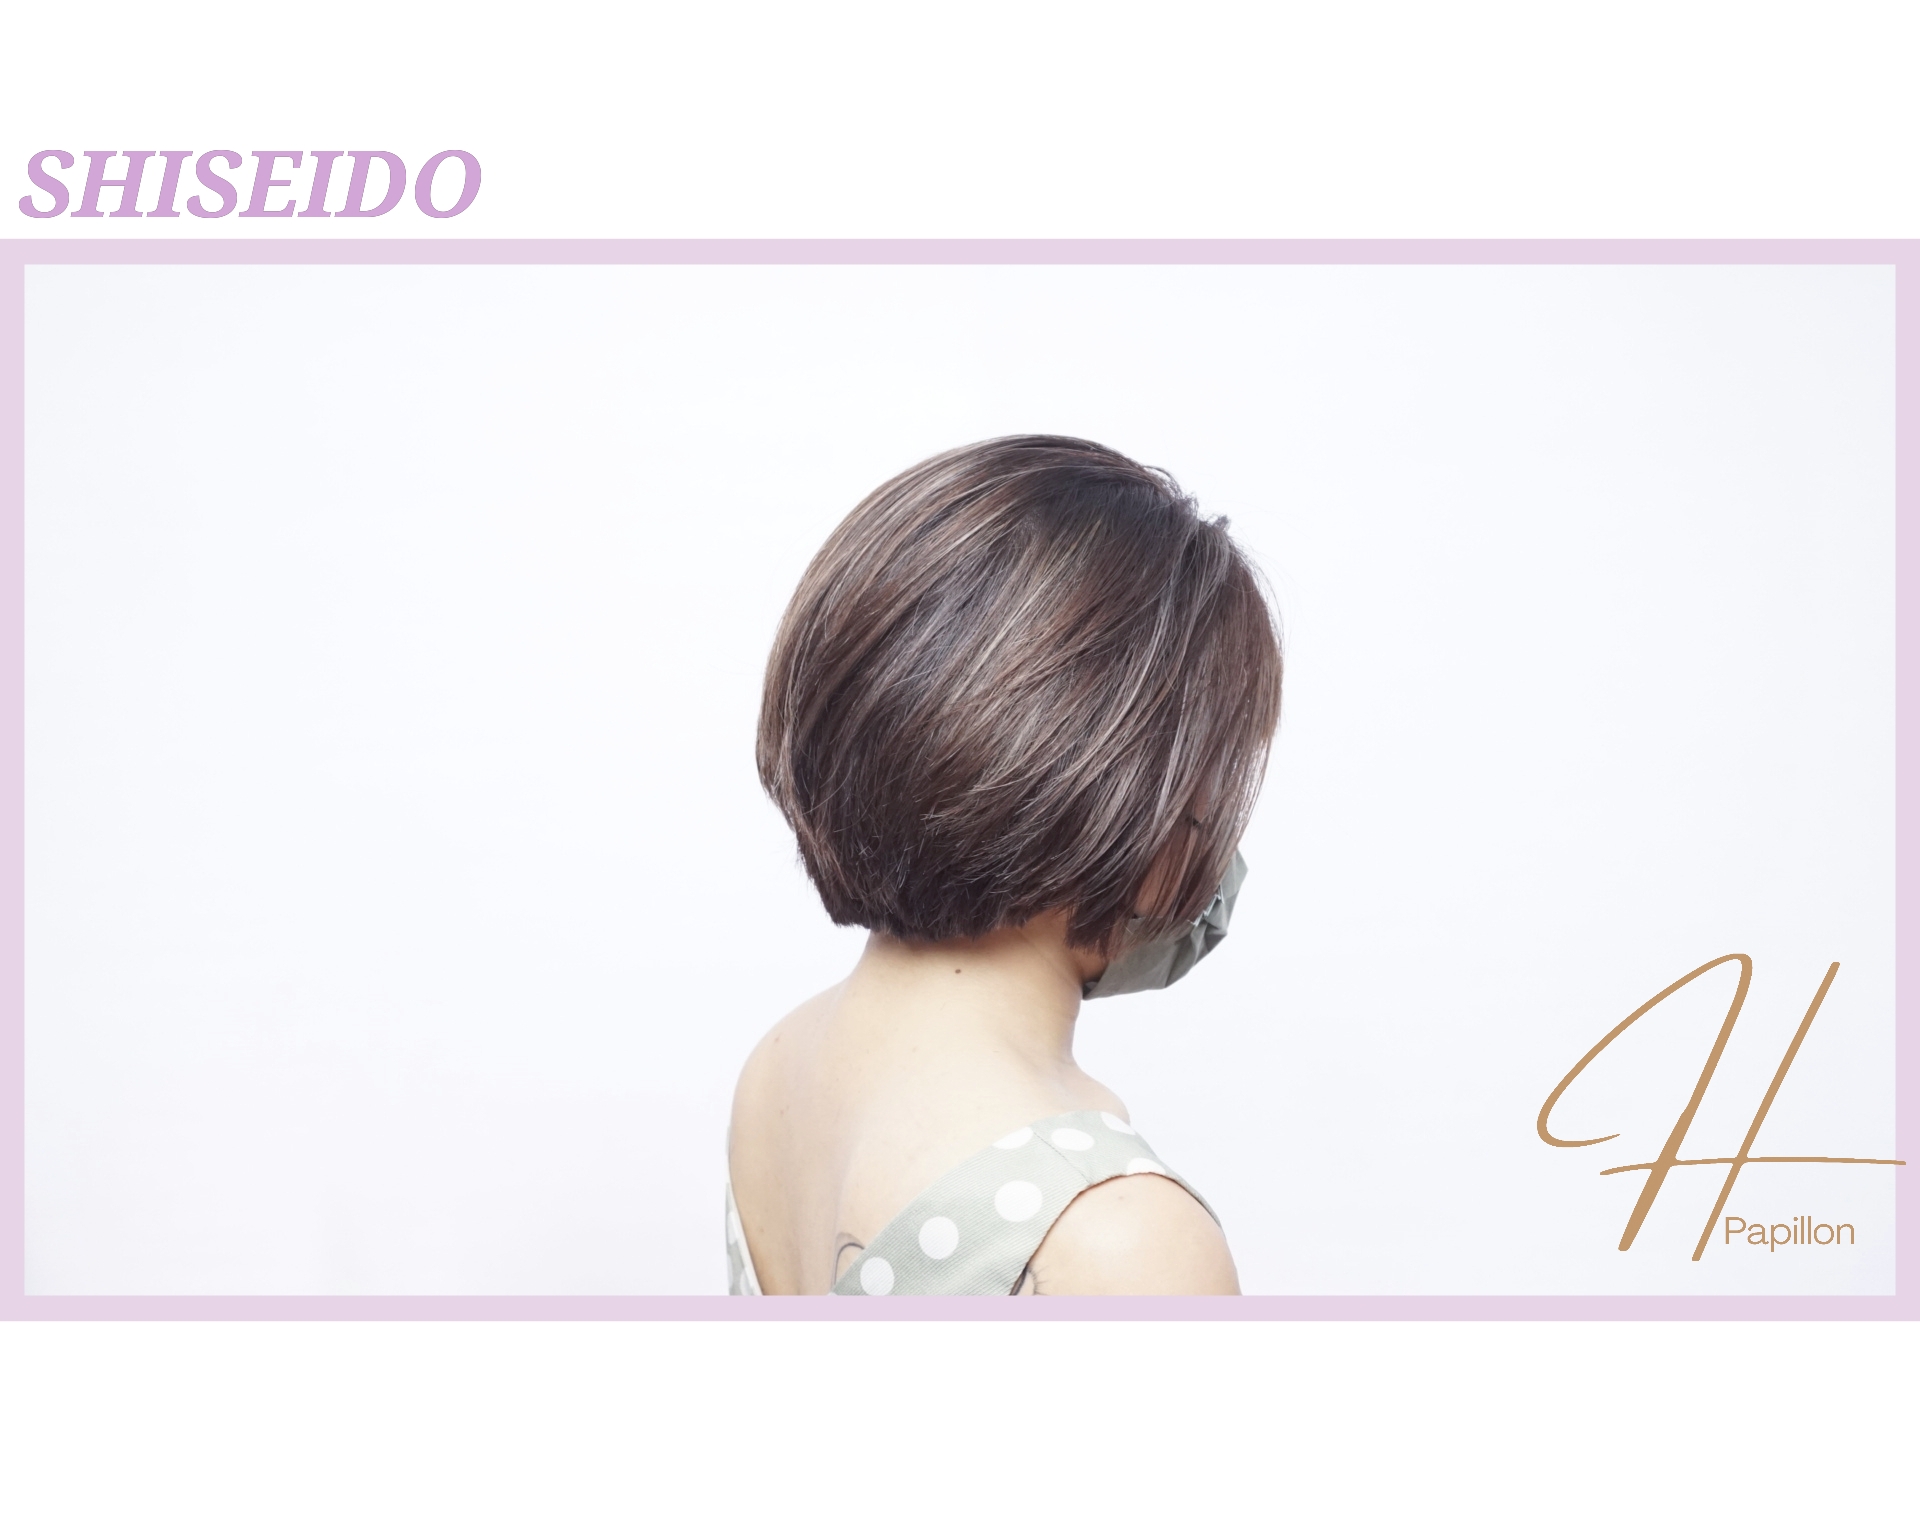 髮型作品參考:shiseido primience